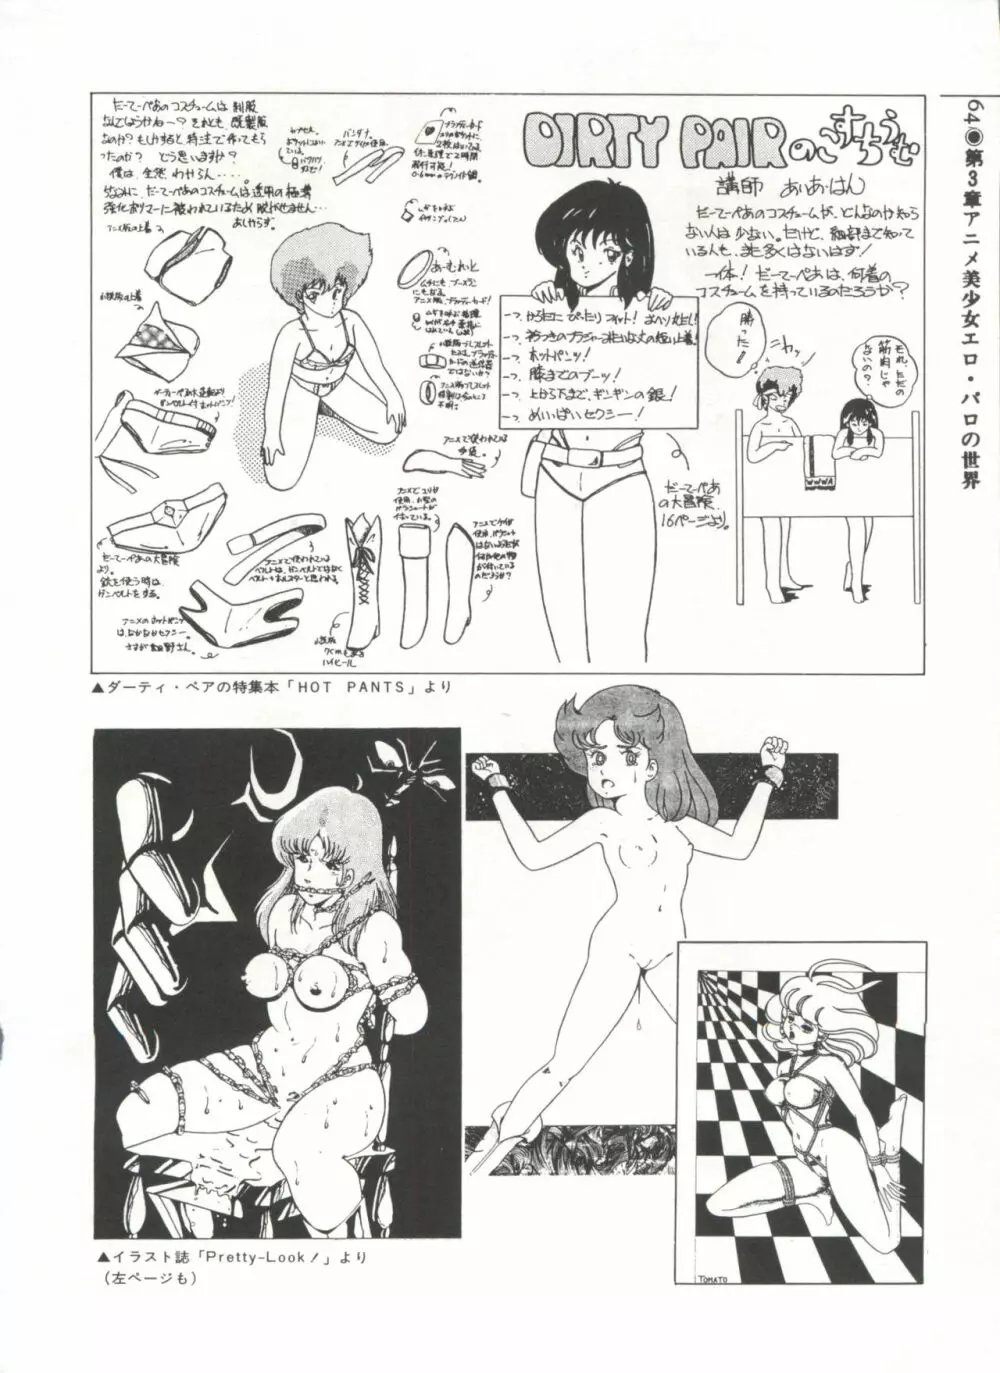 [Anthology] 美少女症候群(2) Lolita syndrome (よろず) 67ページ